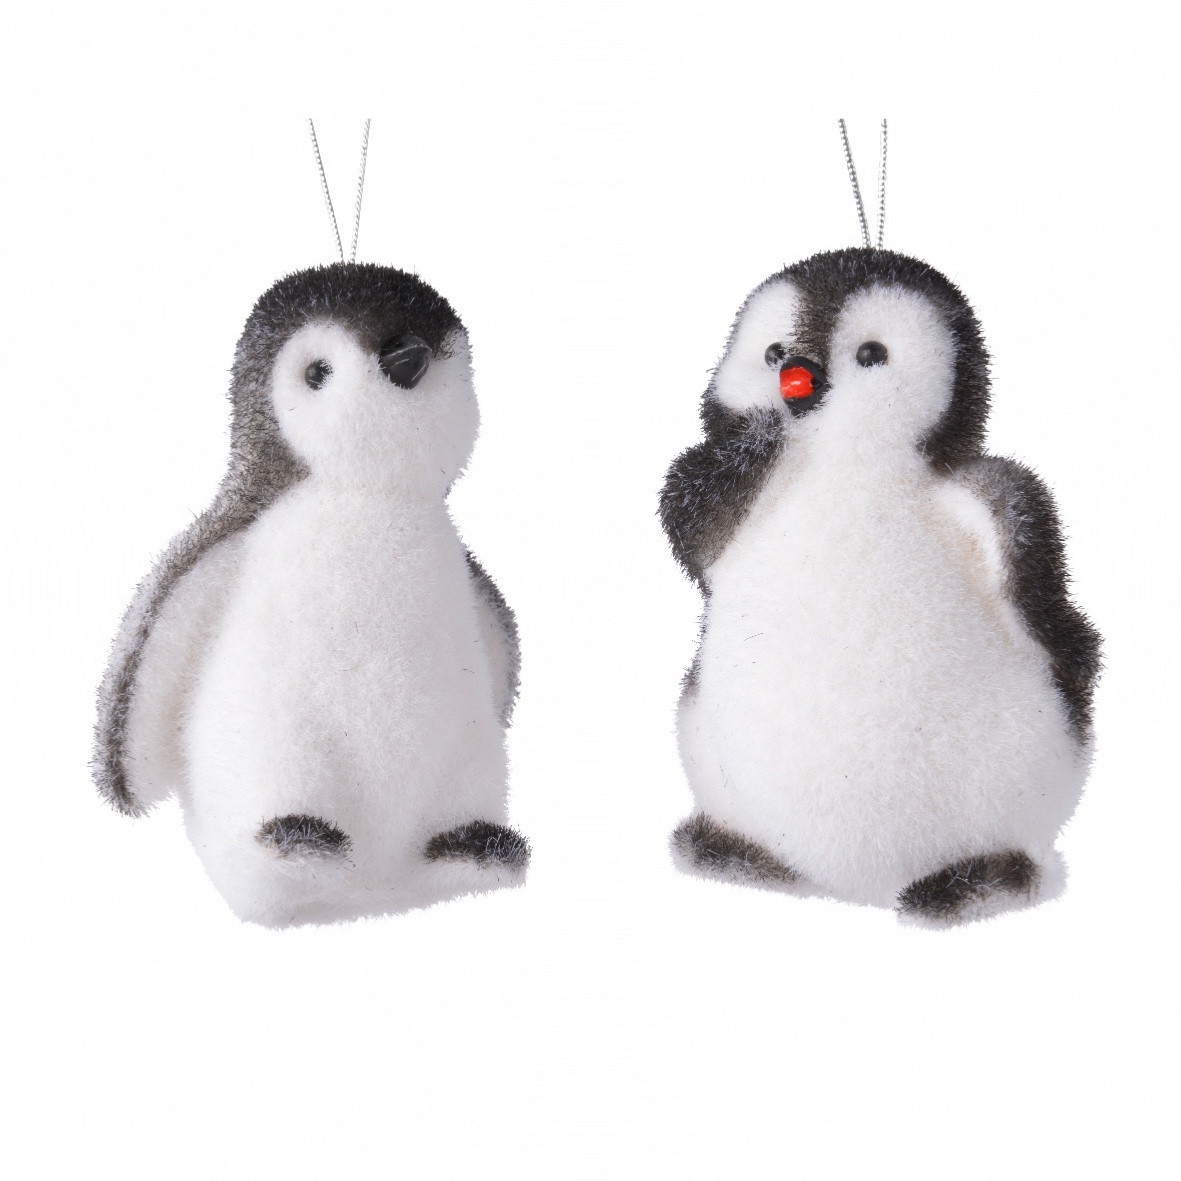 Chauffe pied Pingu blanc/noir-27420 - España